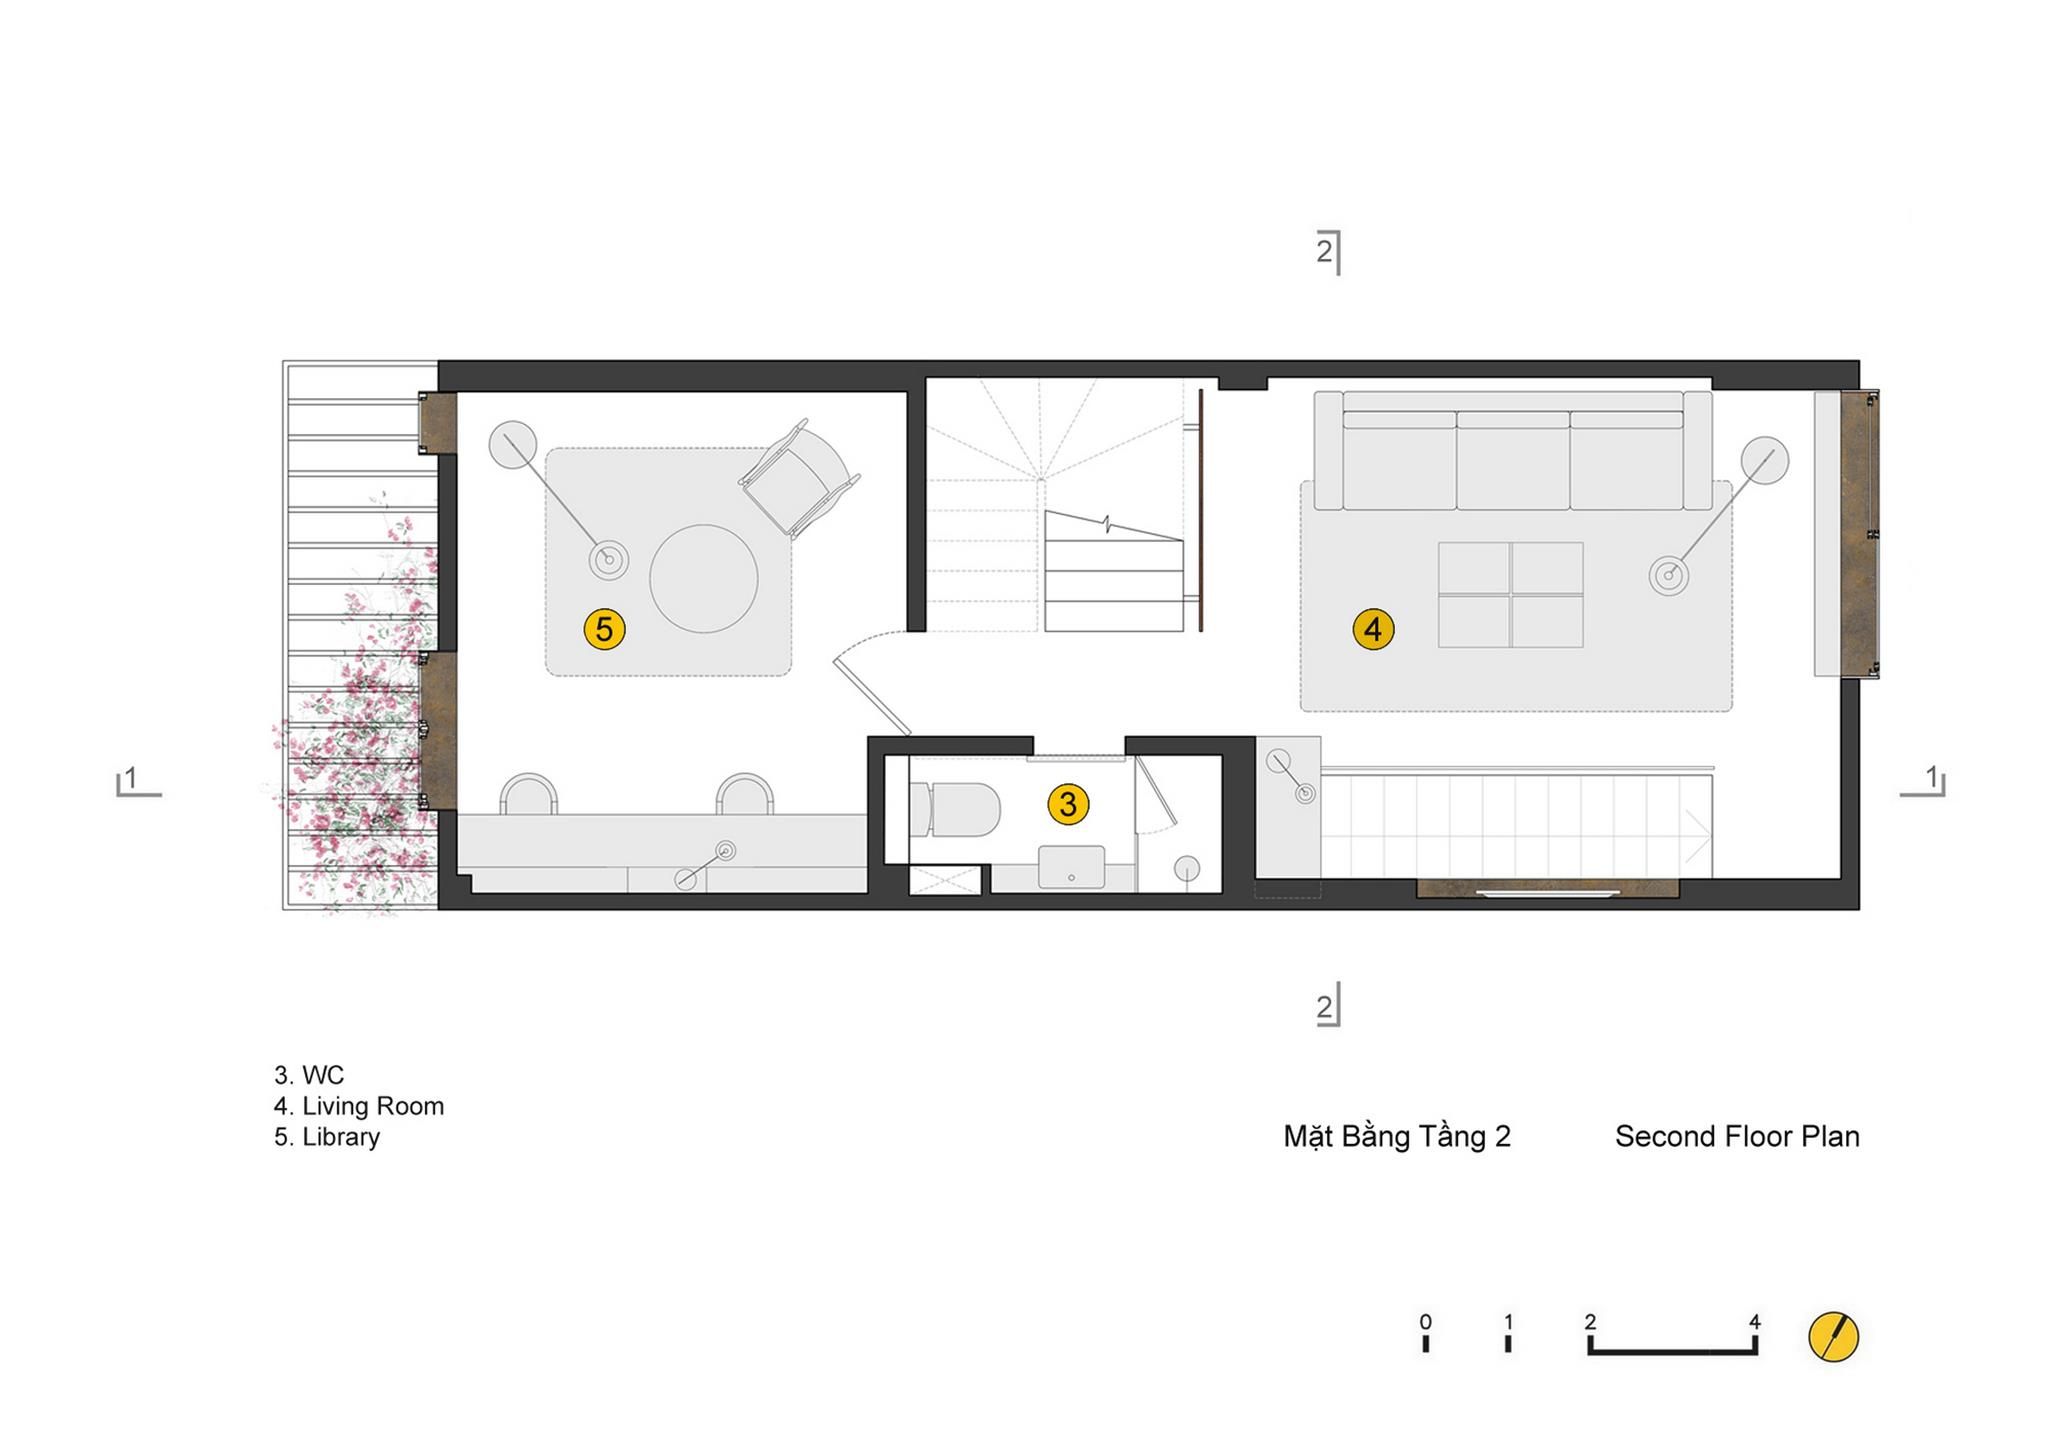 24- Second Floor Plan (Copy)